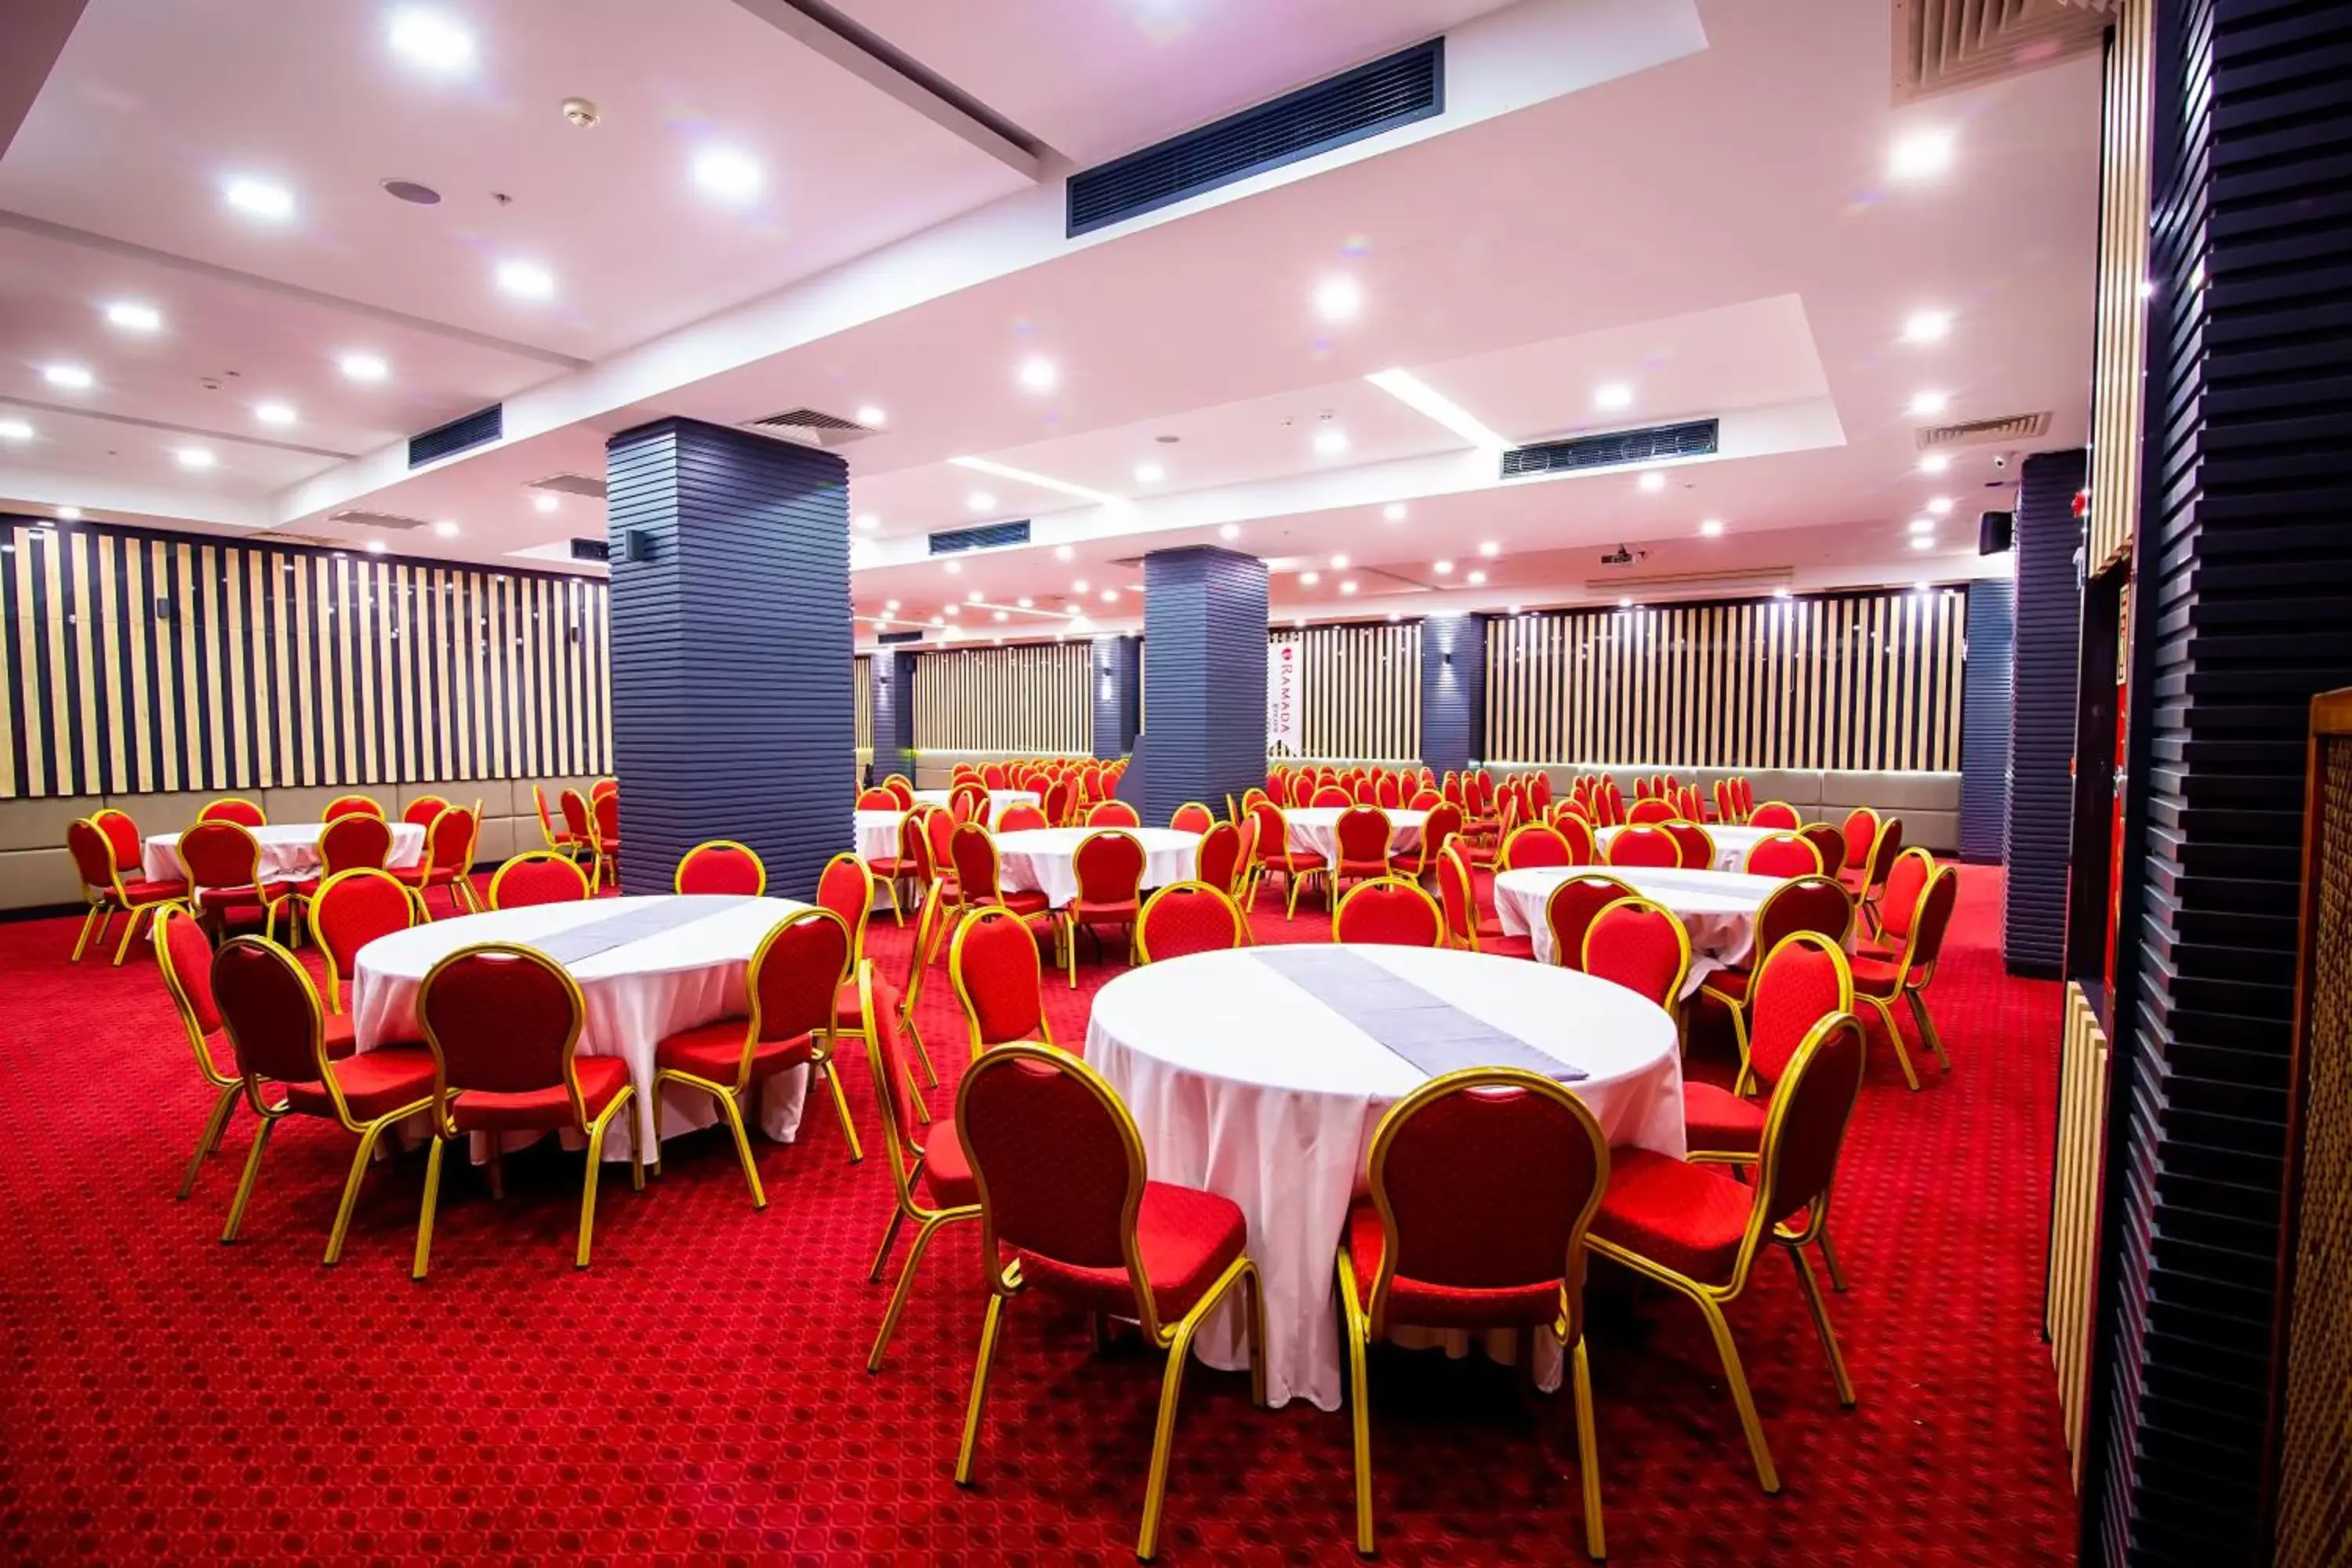 Banquet/Function facilities, Banquet Facilities in Ramada Encore Gebze